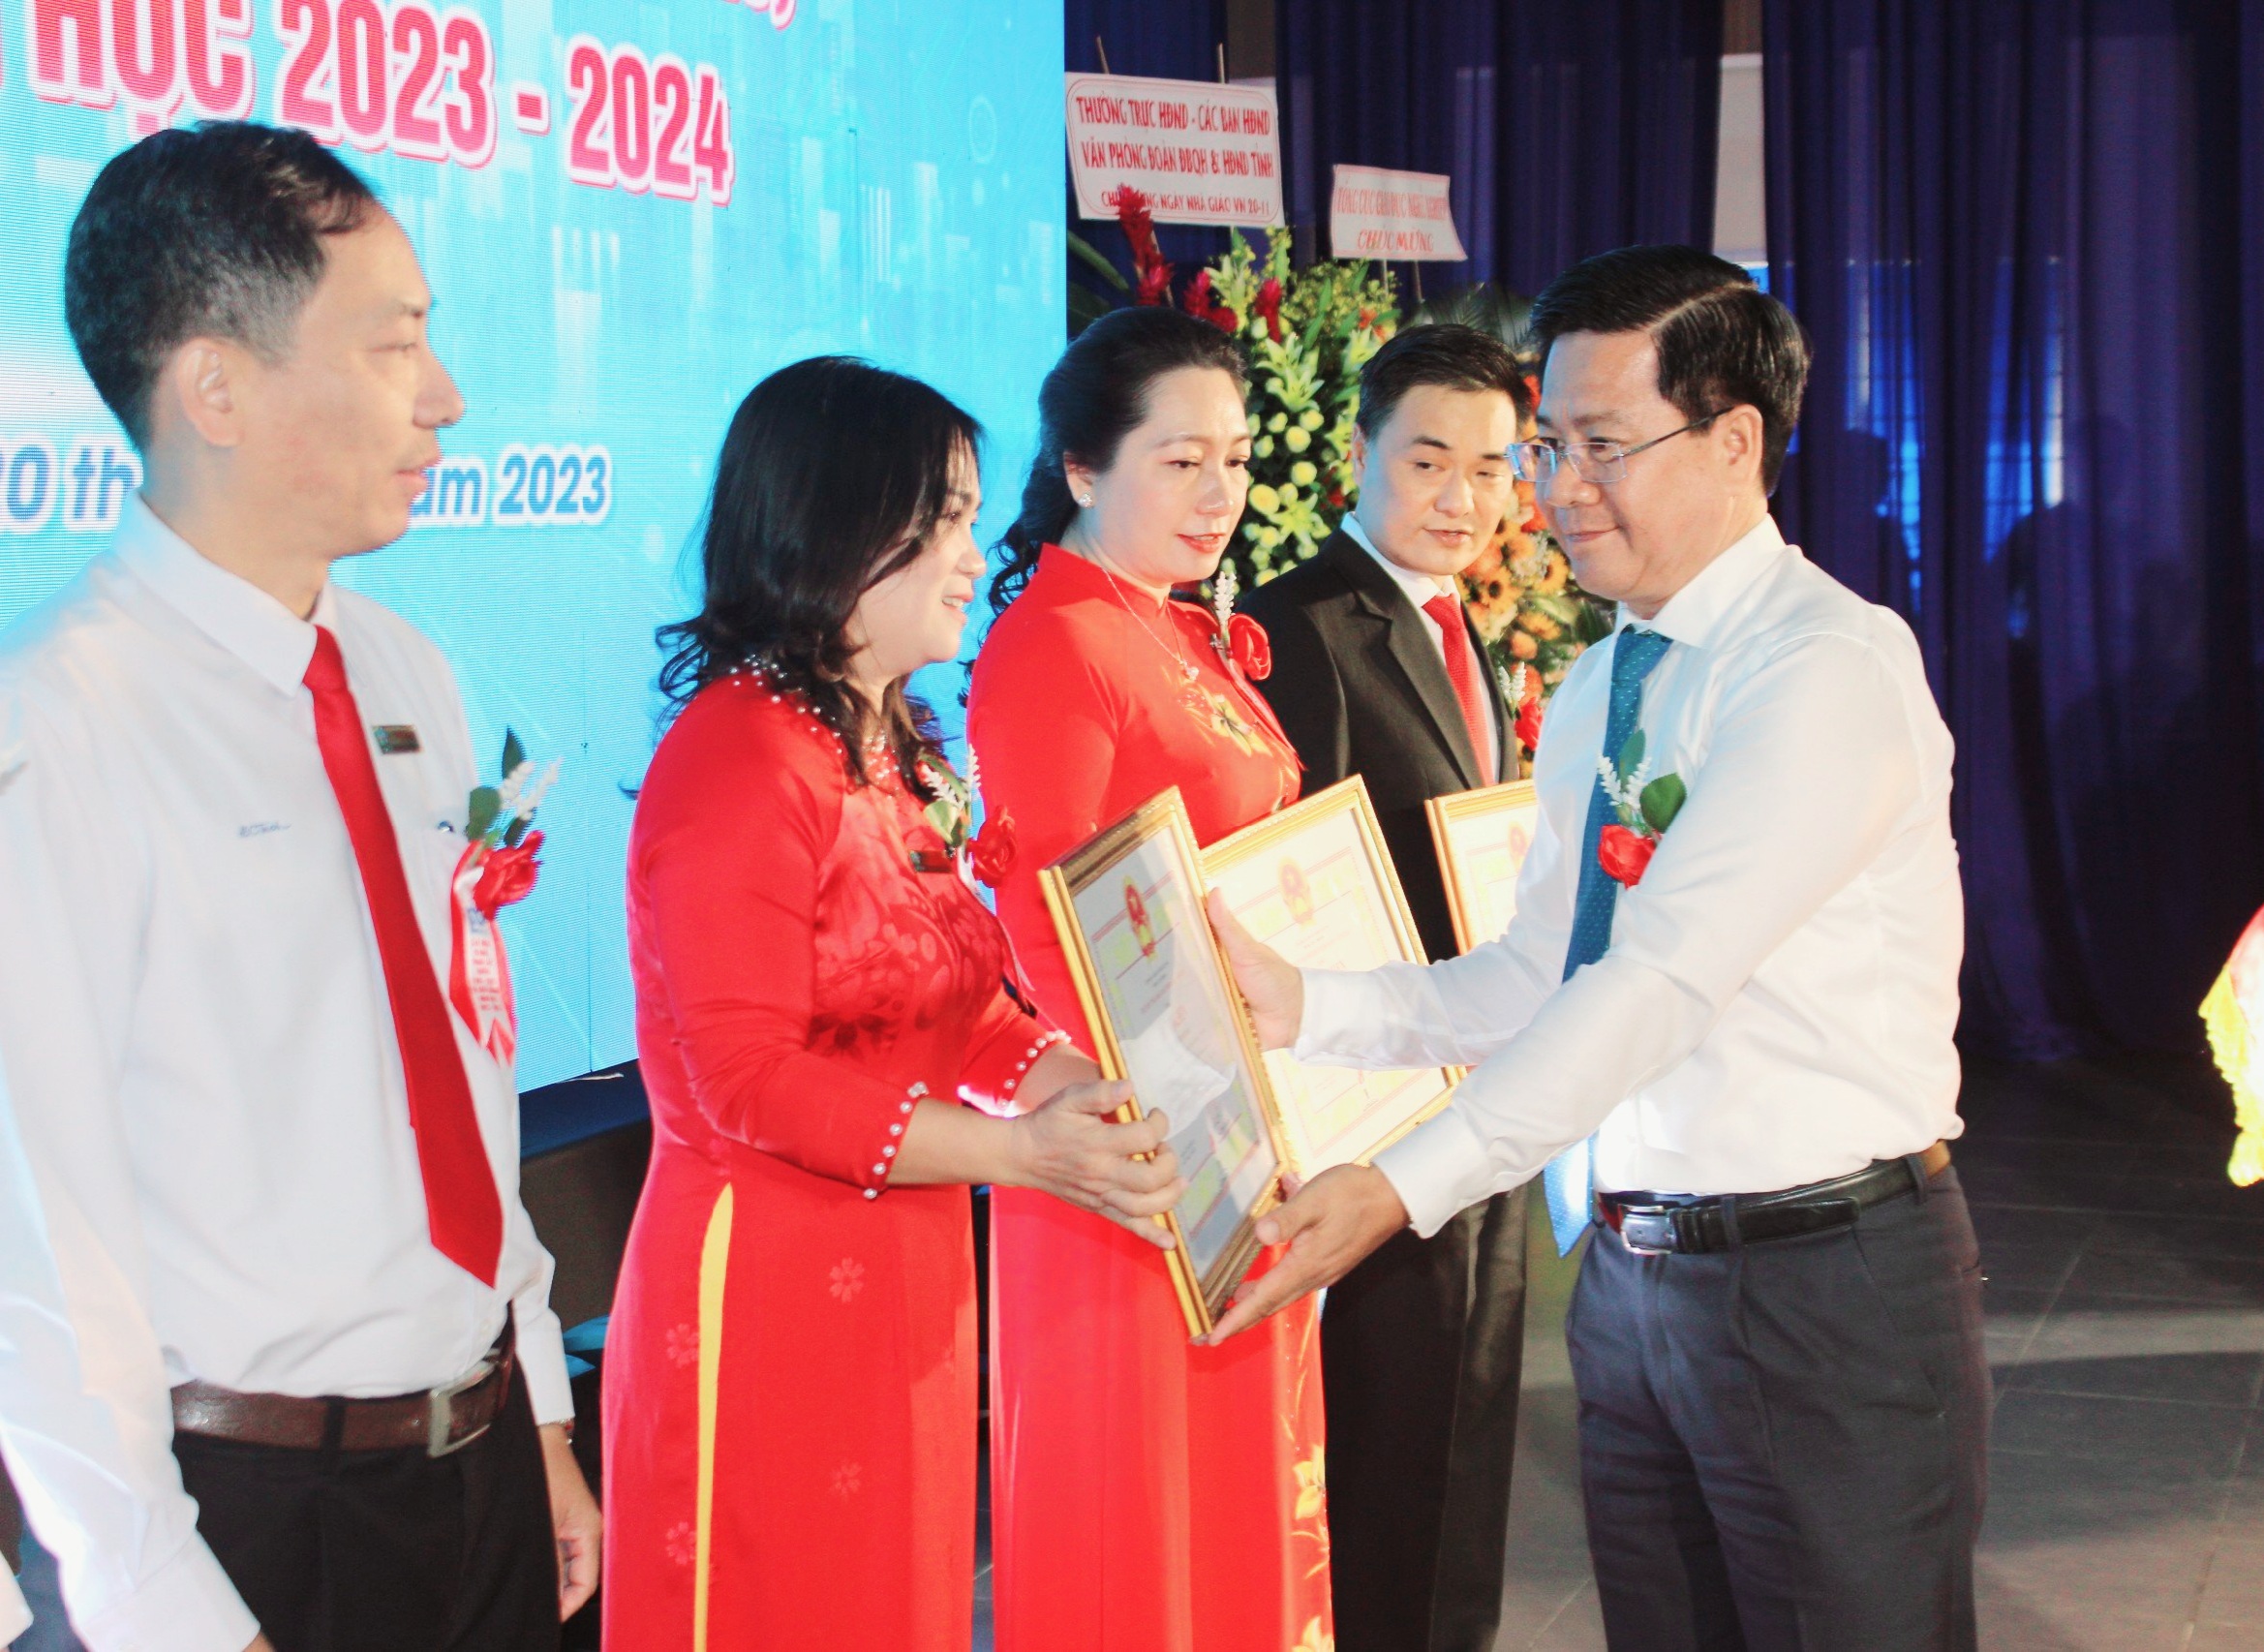 Nhân dịp này, UBND tỉnh tặng Bằng khen cho 5 tập thể, 5 cá nhân có nhiều đóng góp cho sự phát triển của Trường CĐ Kỹ thuật Công nghệ Bà Rịa - Vũng Tàu.